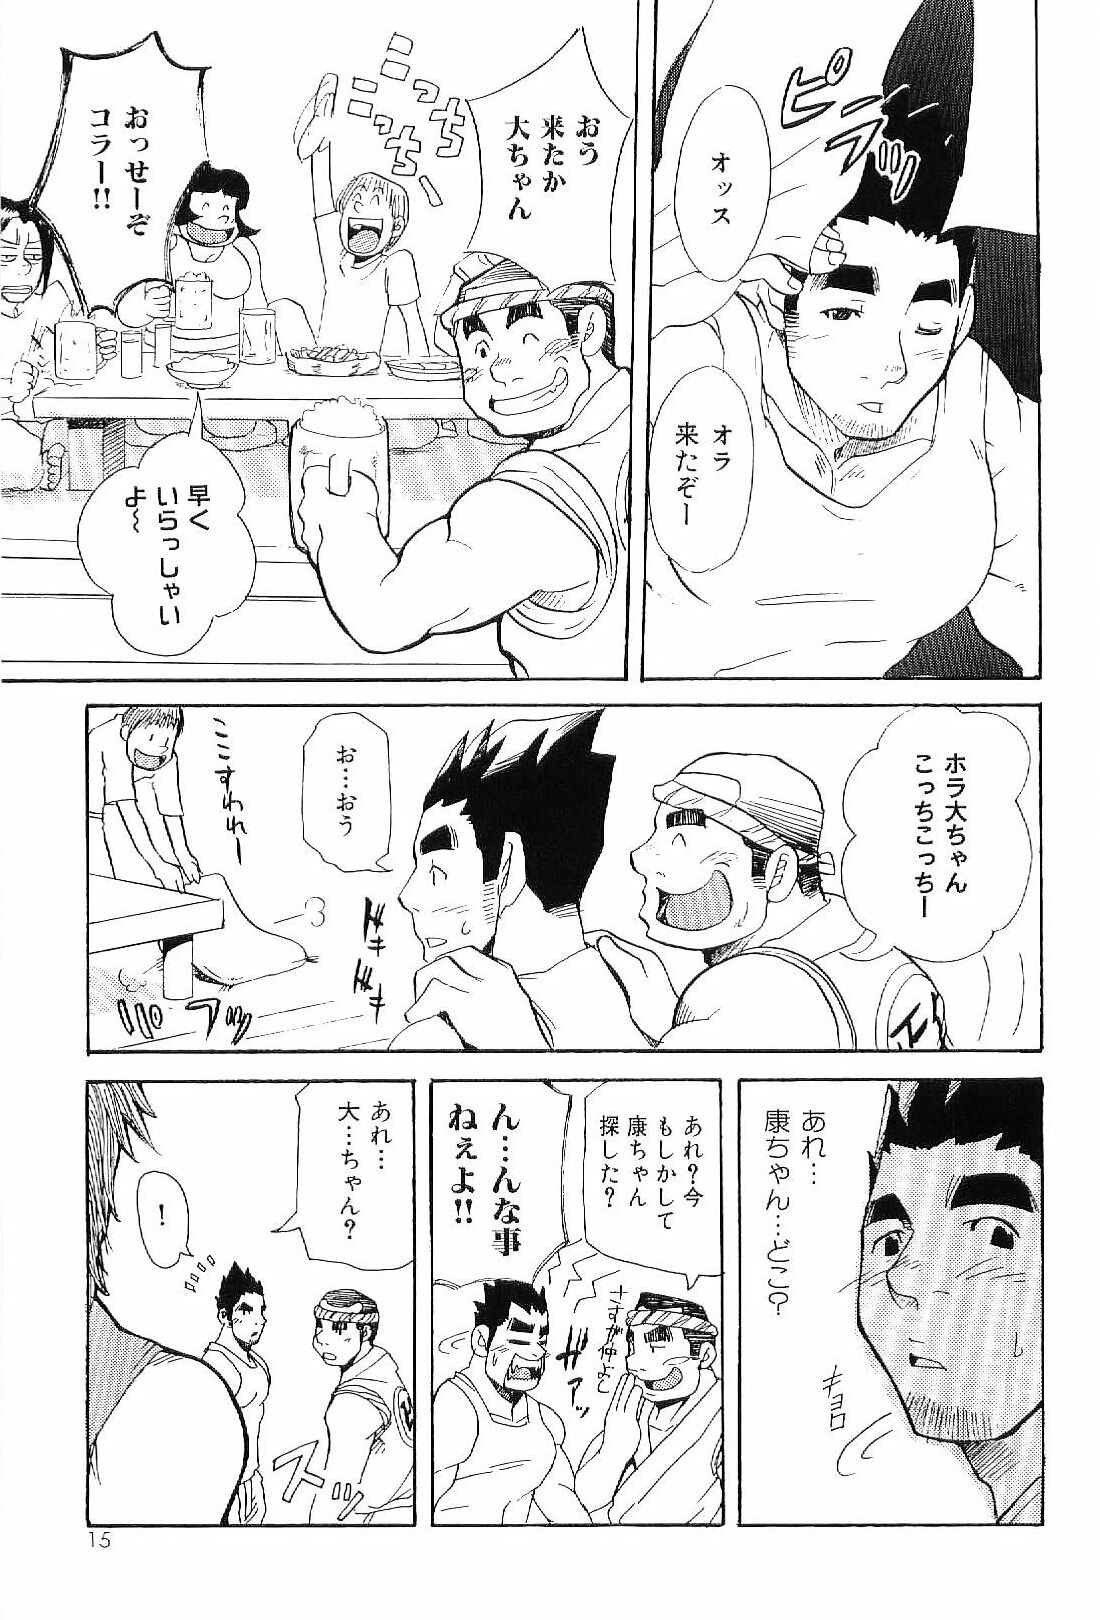 [Anthology] Kinniku Otoko Vol. 6 page 13 full